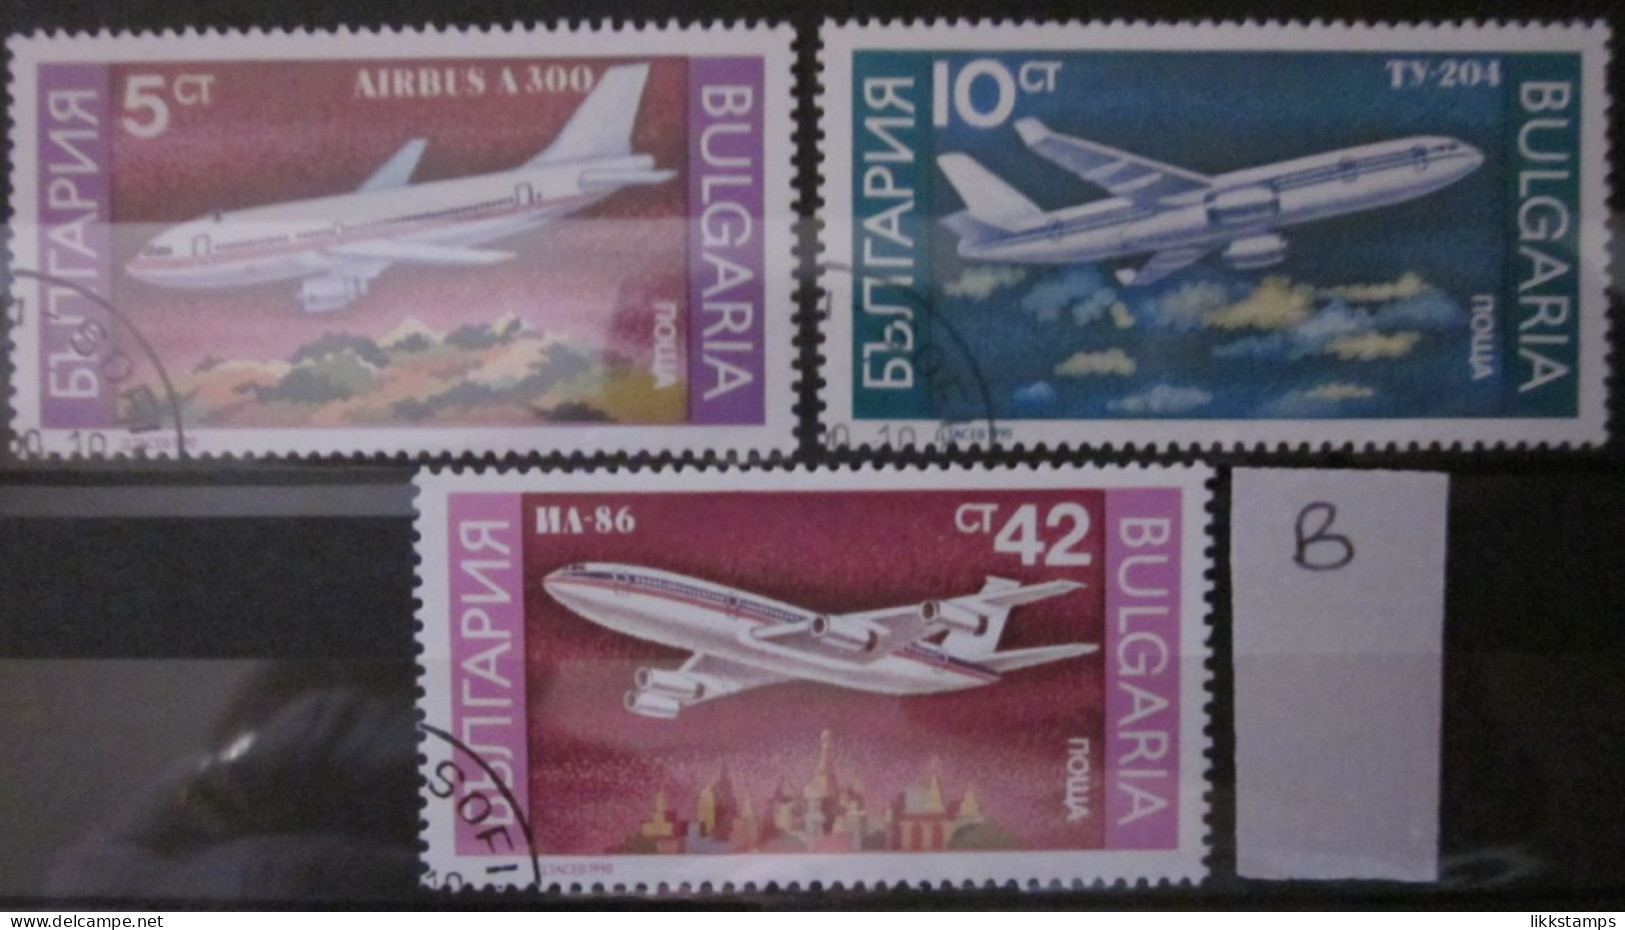 BULGARIA 1990 ~ S.G. 3705, 3706 & 3709, ~ 'LOT B' ~ AIRCRAFT. ~  VFU #02962 - Oblitérés